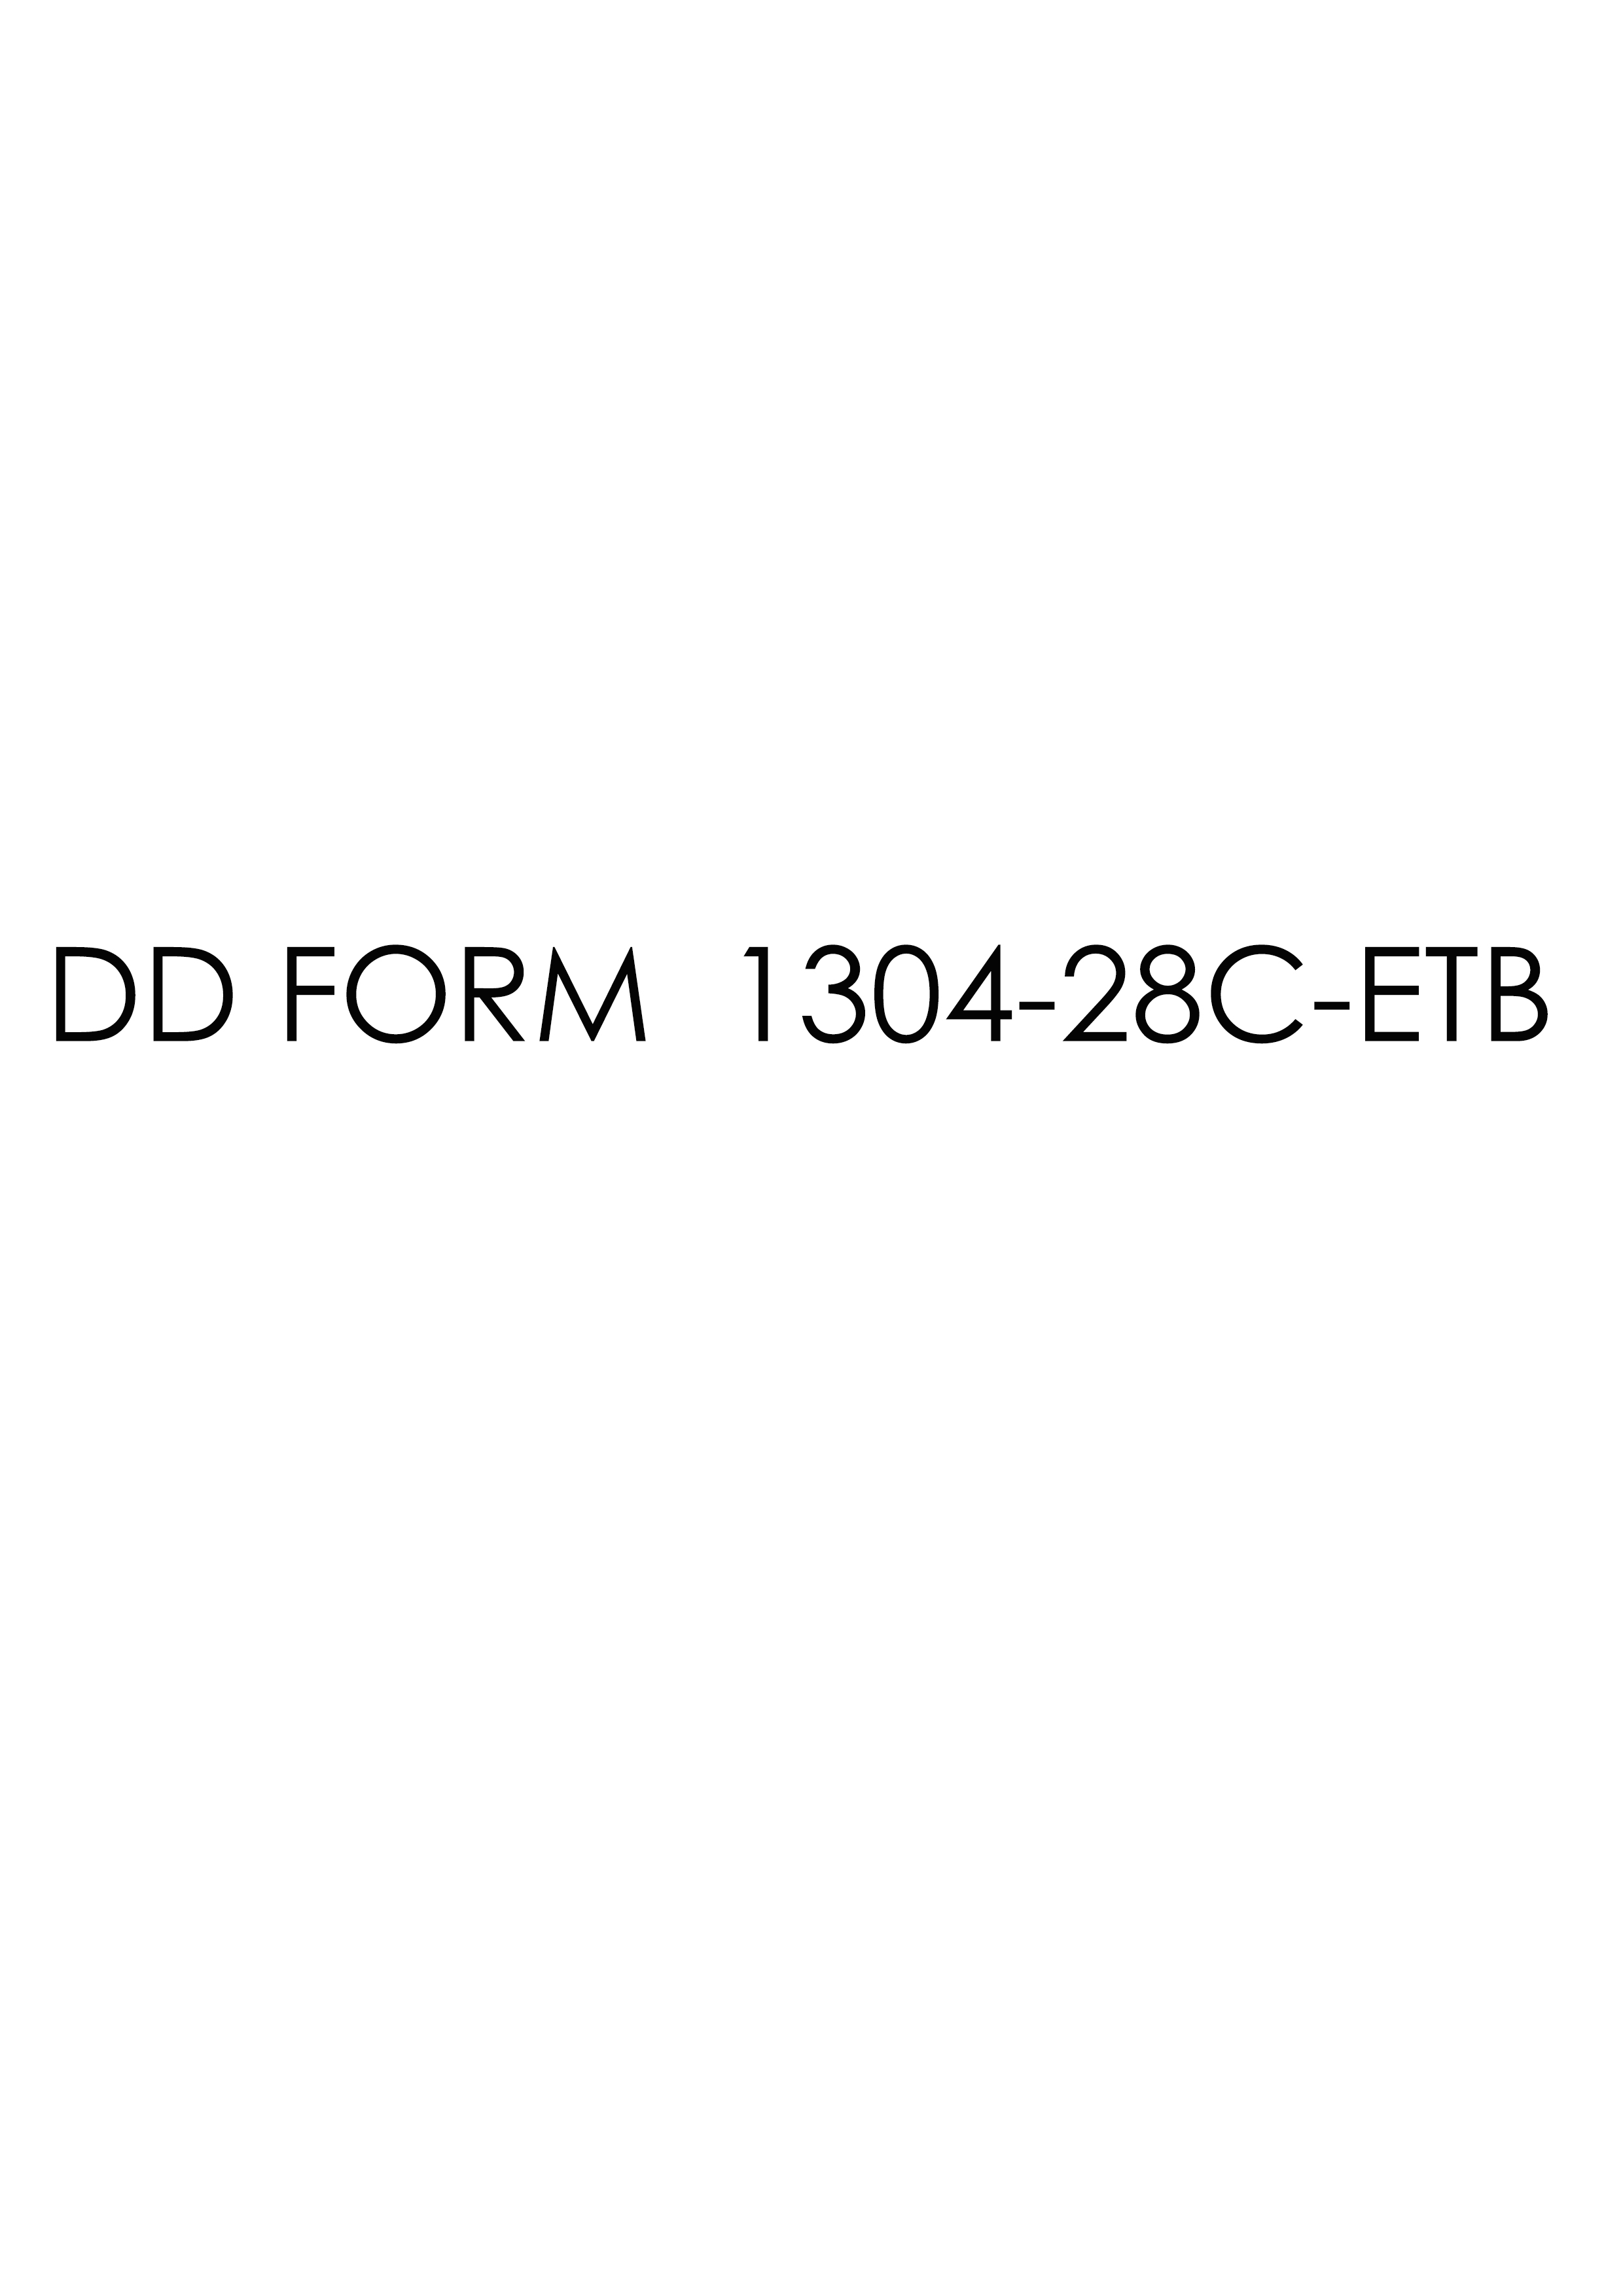 Download dd 1304-28C-ETB Form